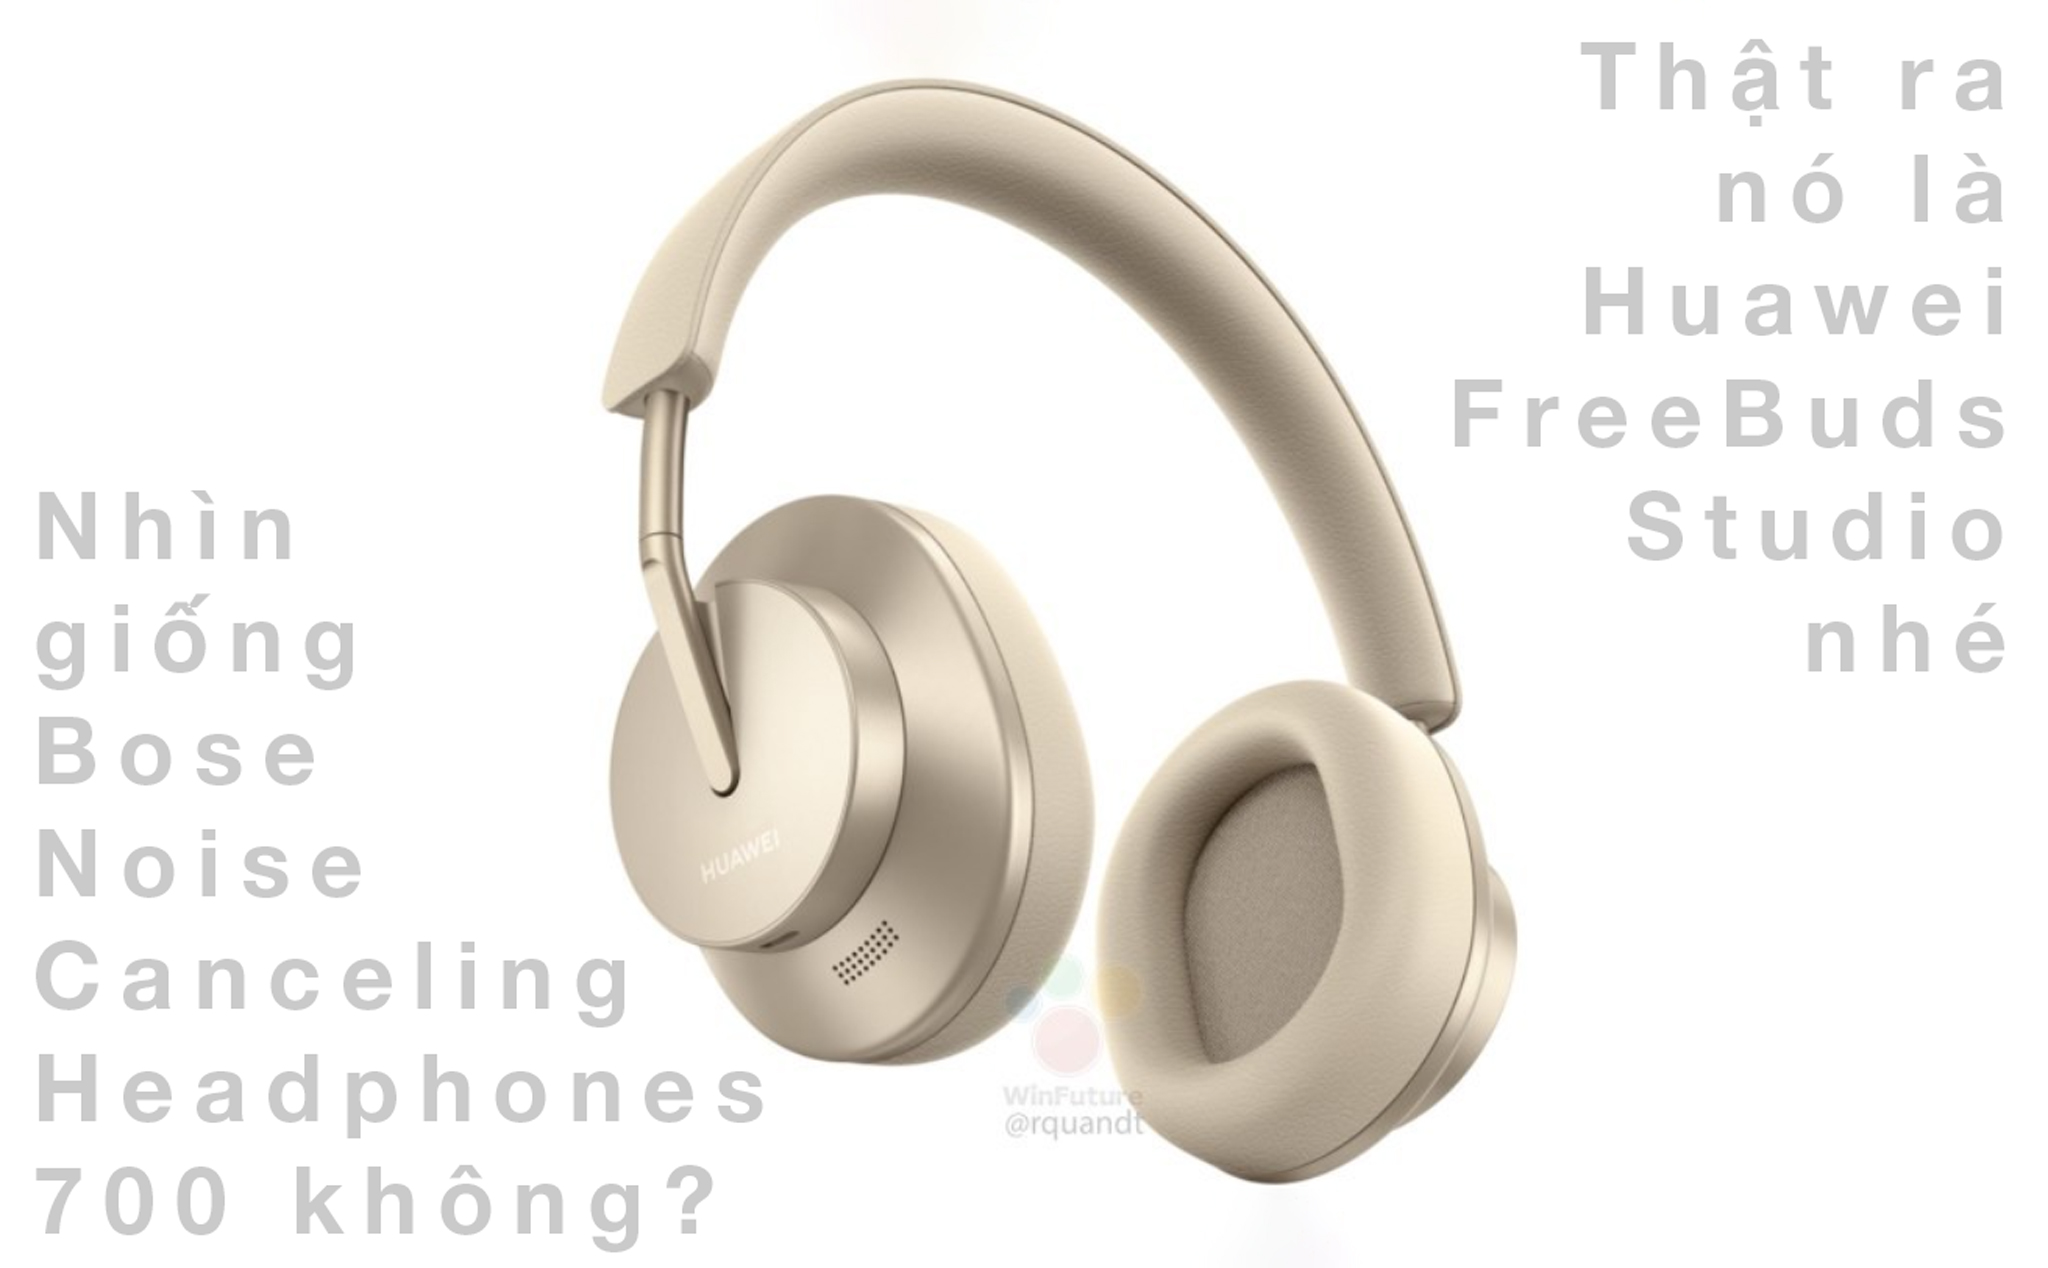 Huawei FreeBuds Studio tai nghe over-ear chống ồn ANC cạnh tranh Sony và Bose